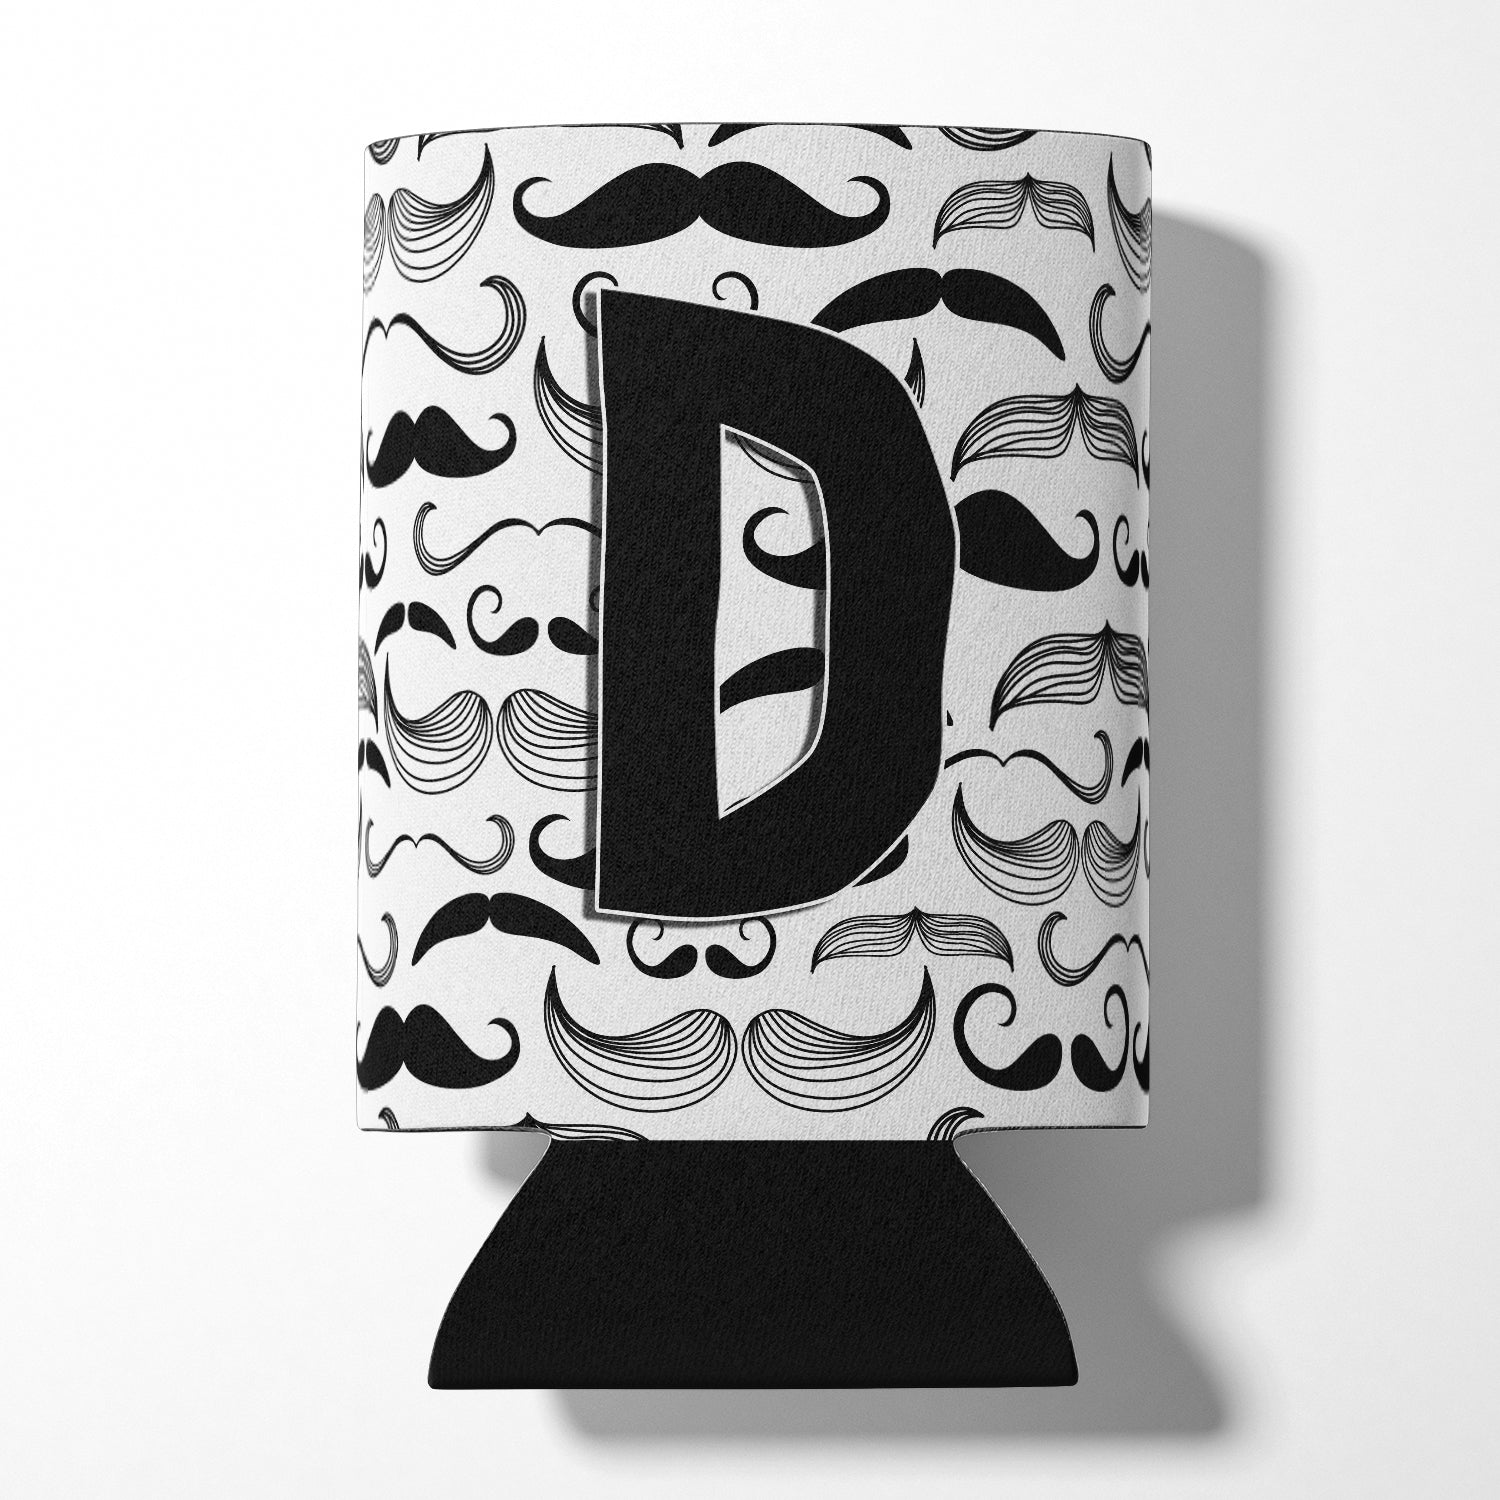 Letter D Moustache Initial Can or Bottle Hugger CJ2009-DCC